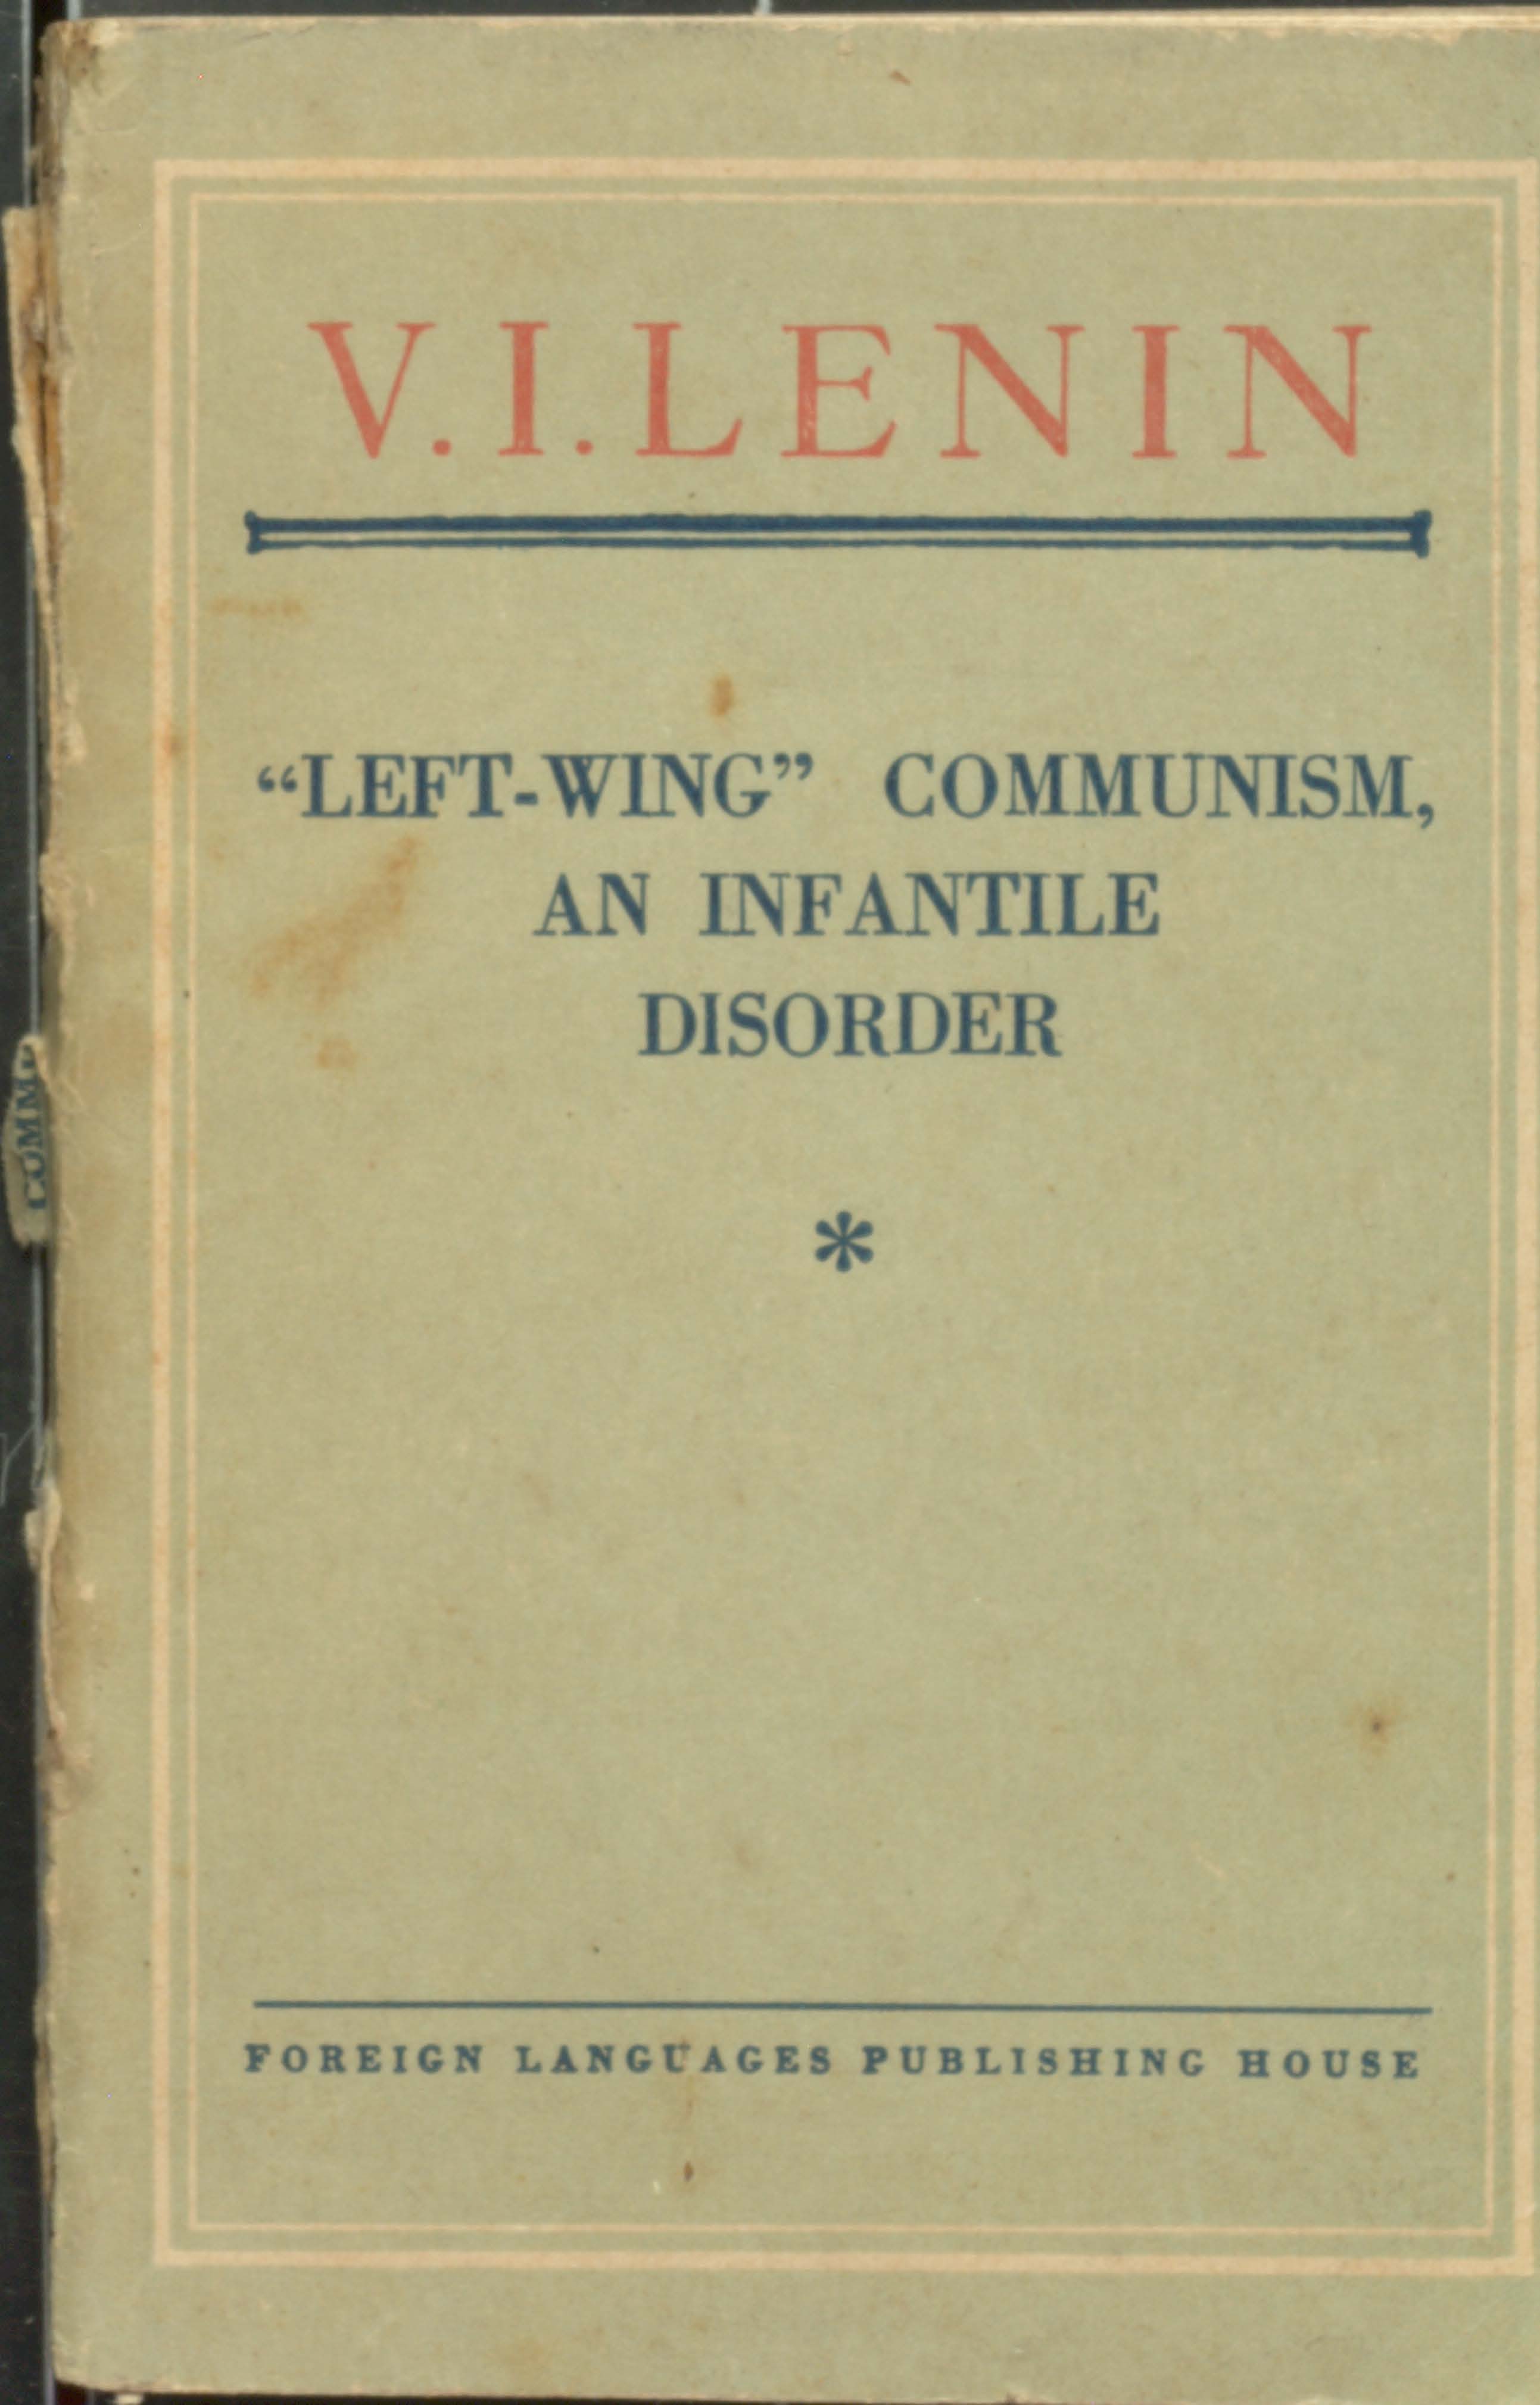 V.L.Lenin "leet-wing" communisum,an infantile disorder